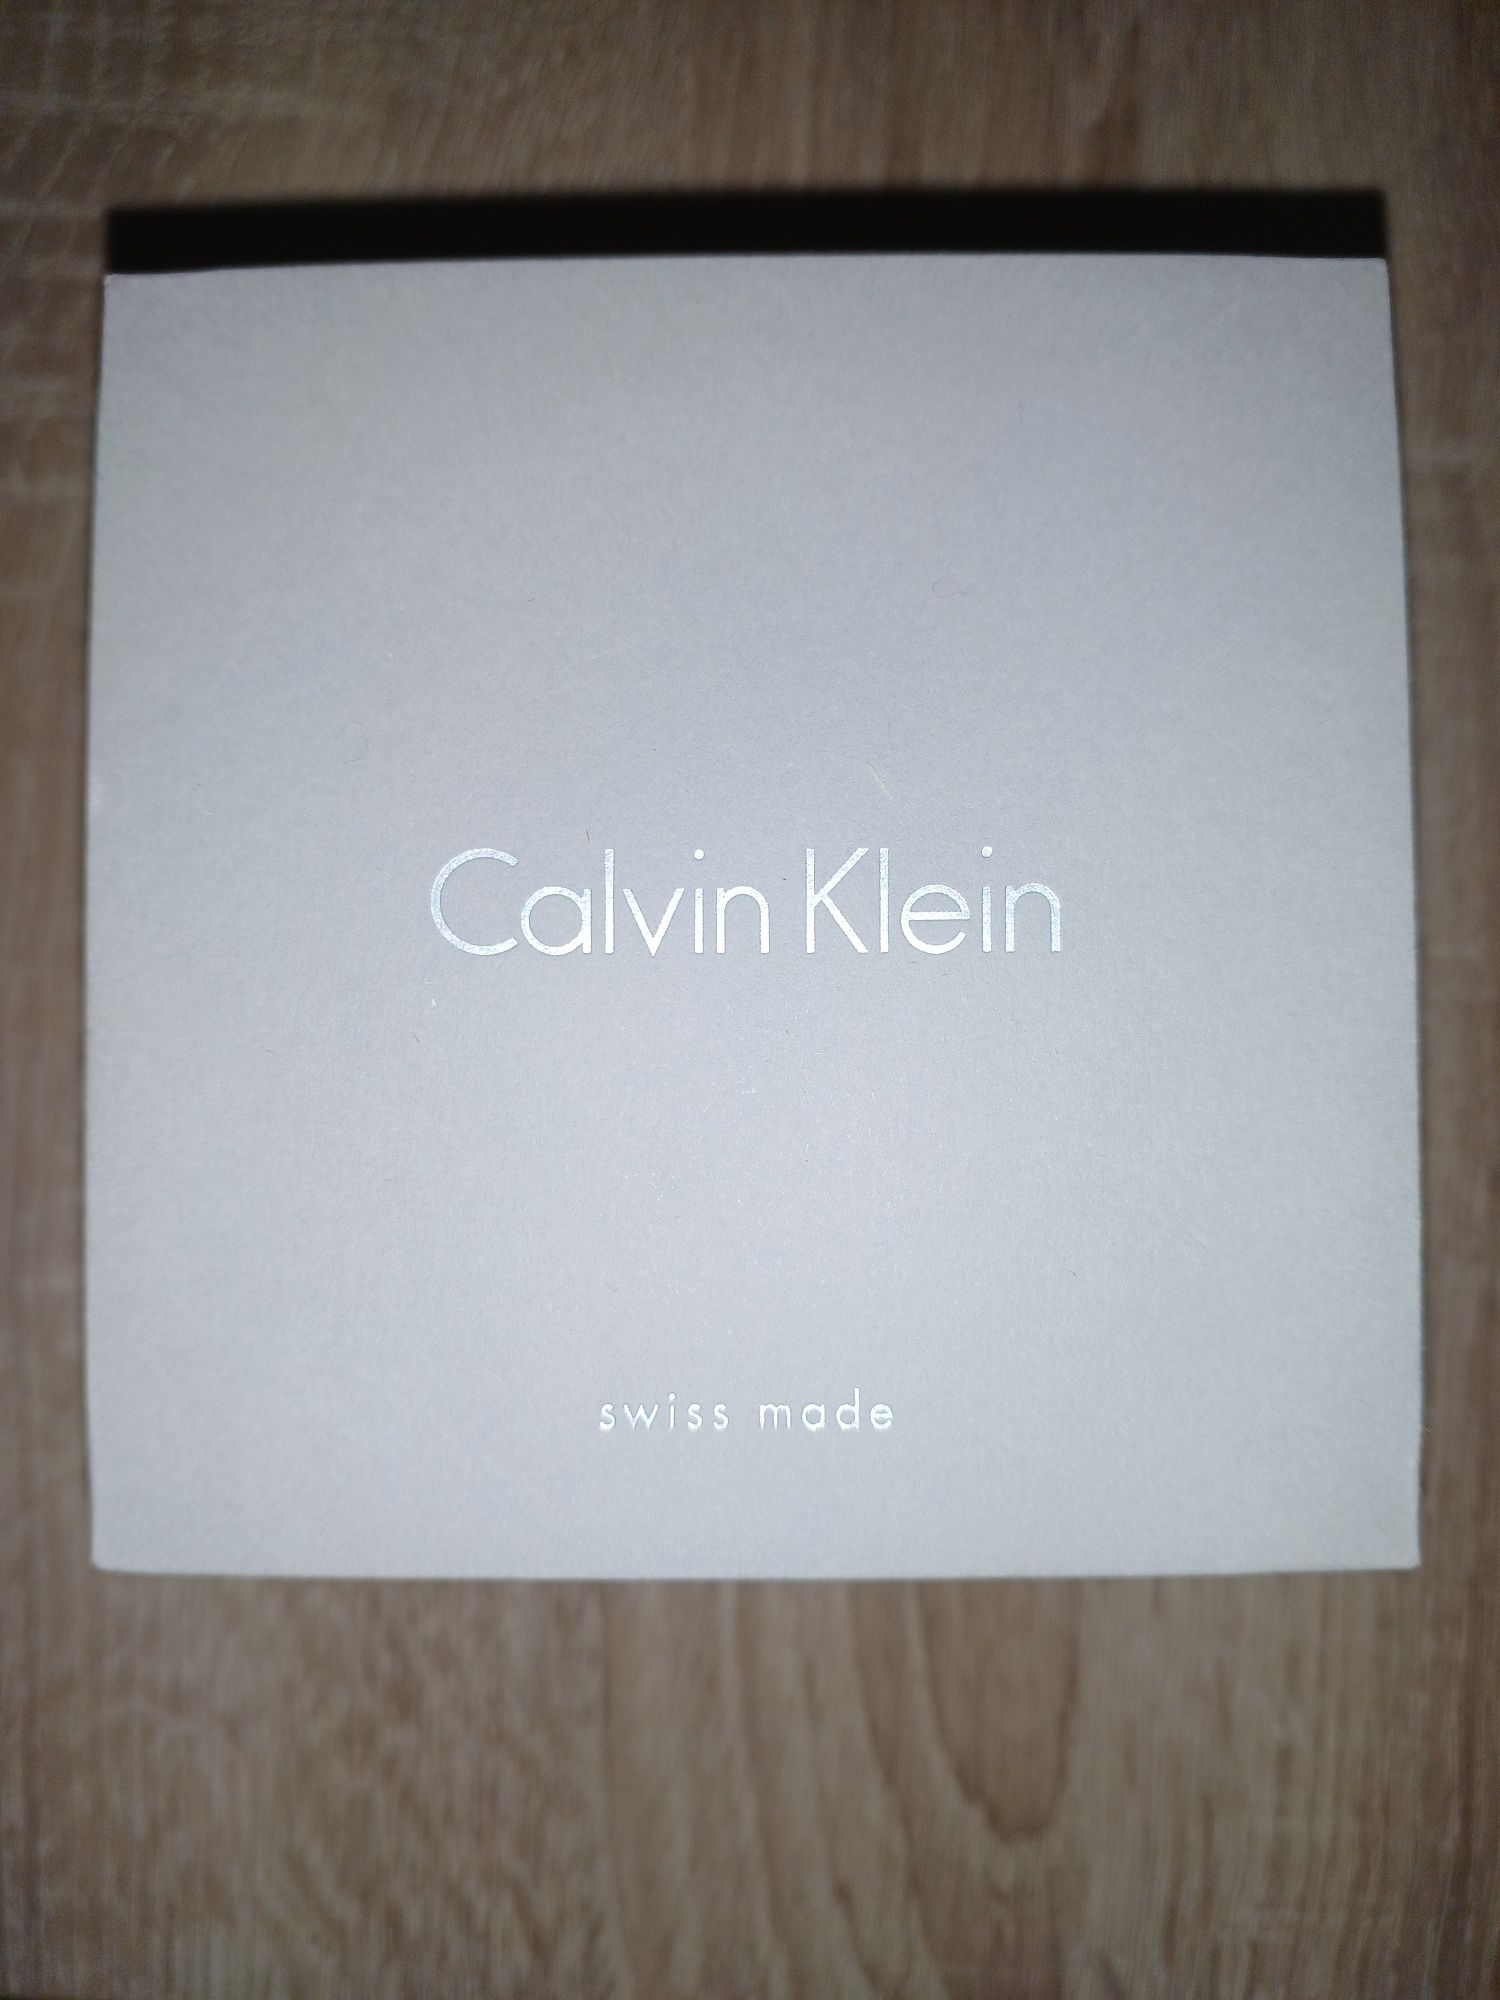 Calvin Klein oryginalny zegarek damski w bardzo dobrym stanie